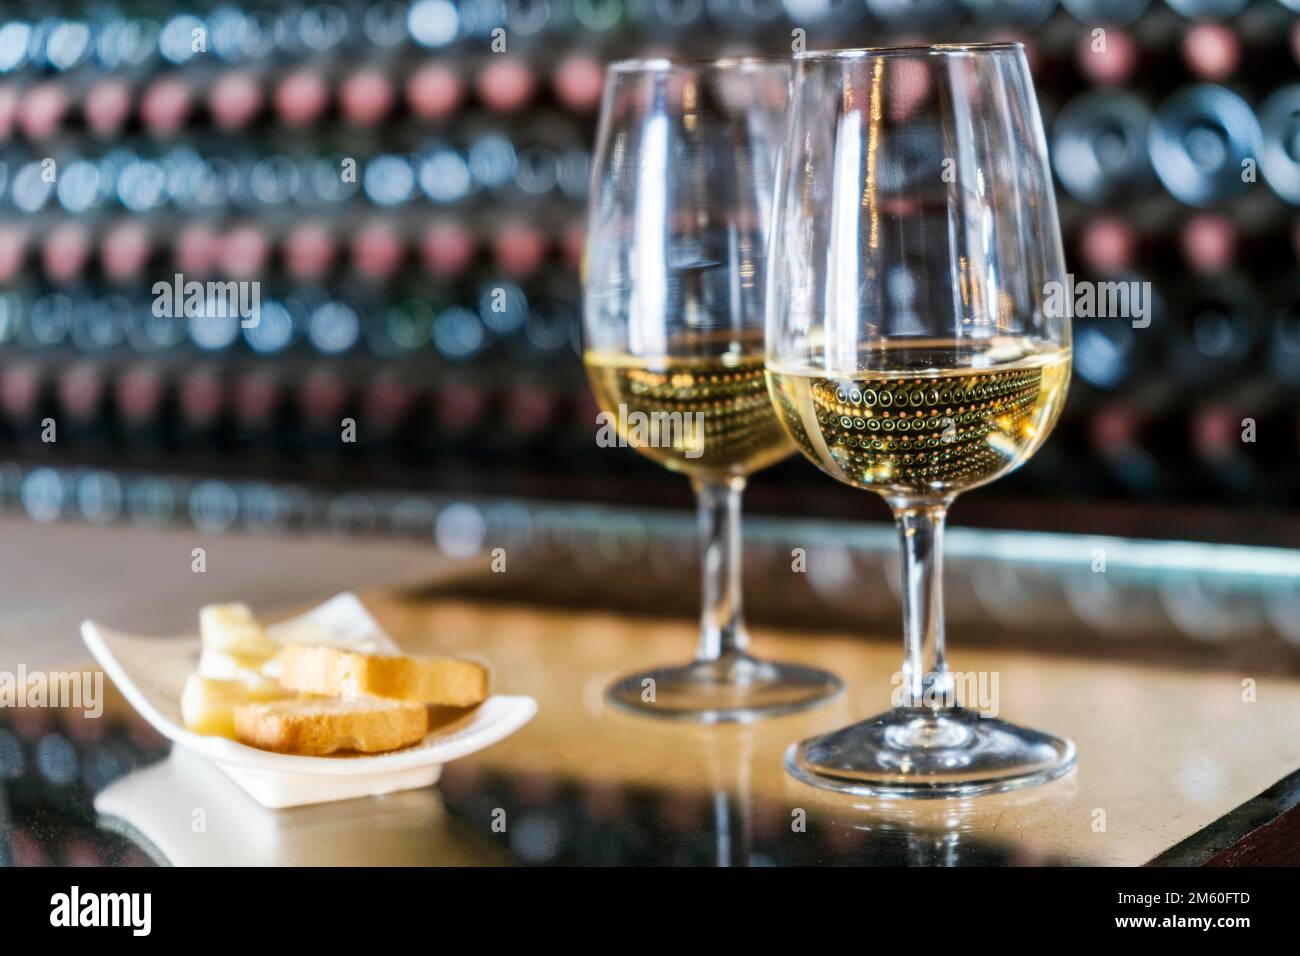 Dégustation de vins dans le domaine viticole, 2 verres de vin blanc avec toasts et fromage avec des centaines de bouteilles de vin empilées derrière, Lanzarote, Espagne Banque D'Images